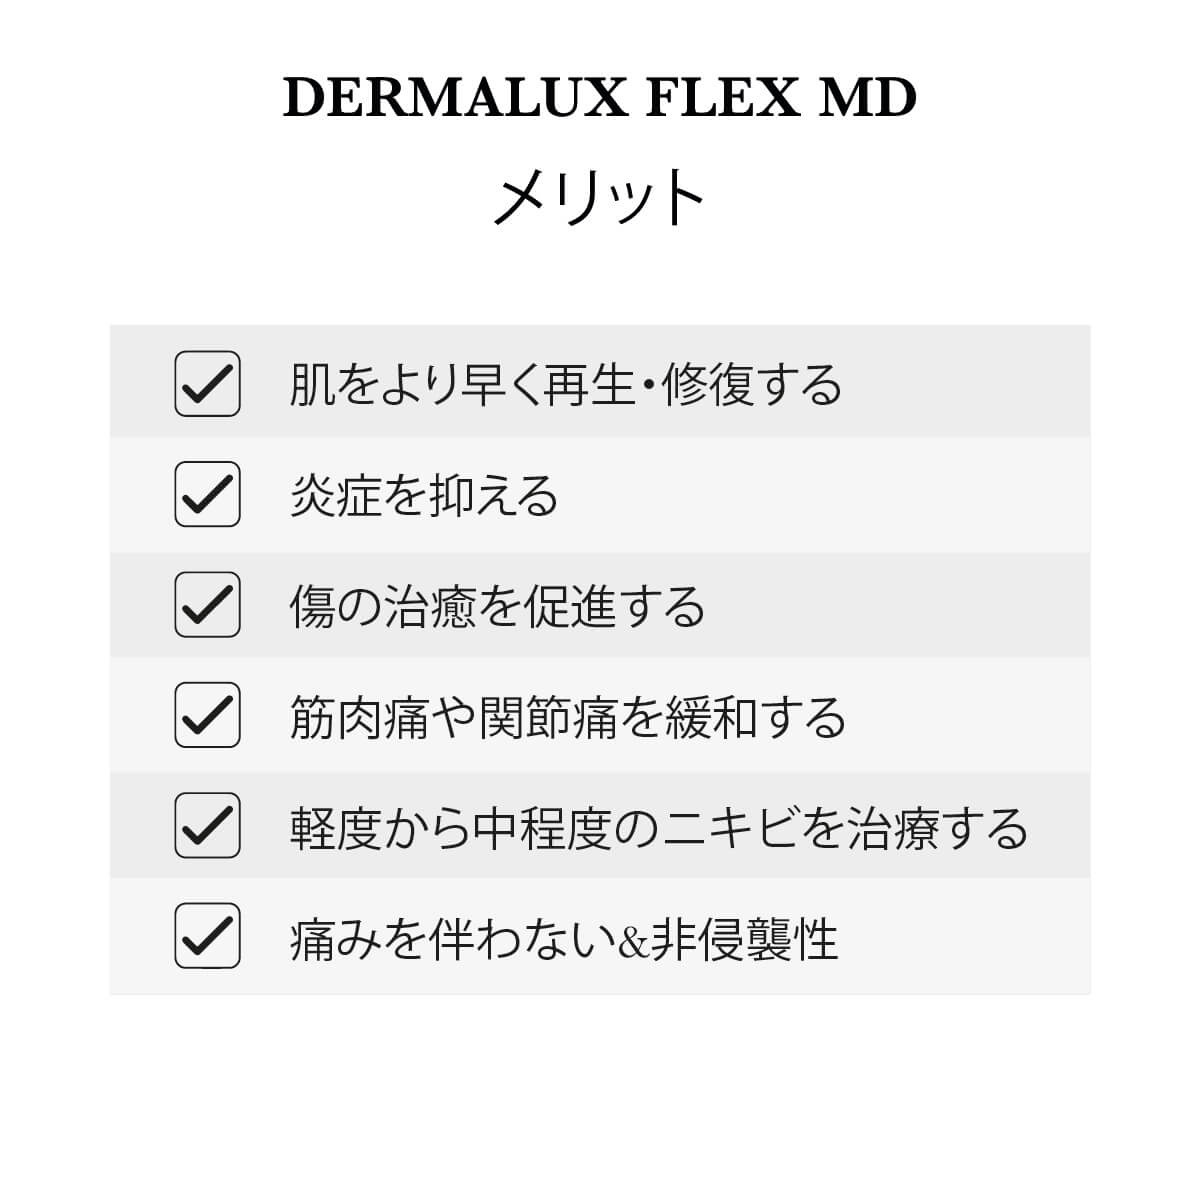 Dermalux フレックス MD